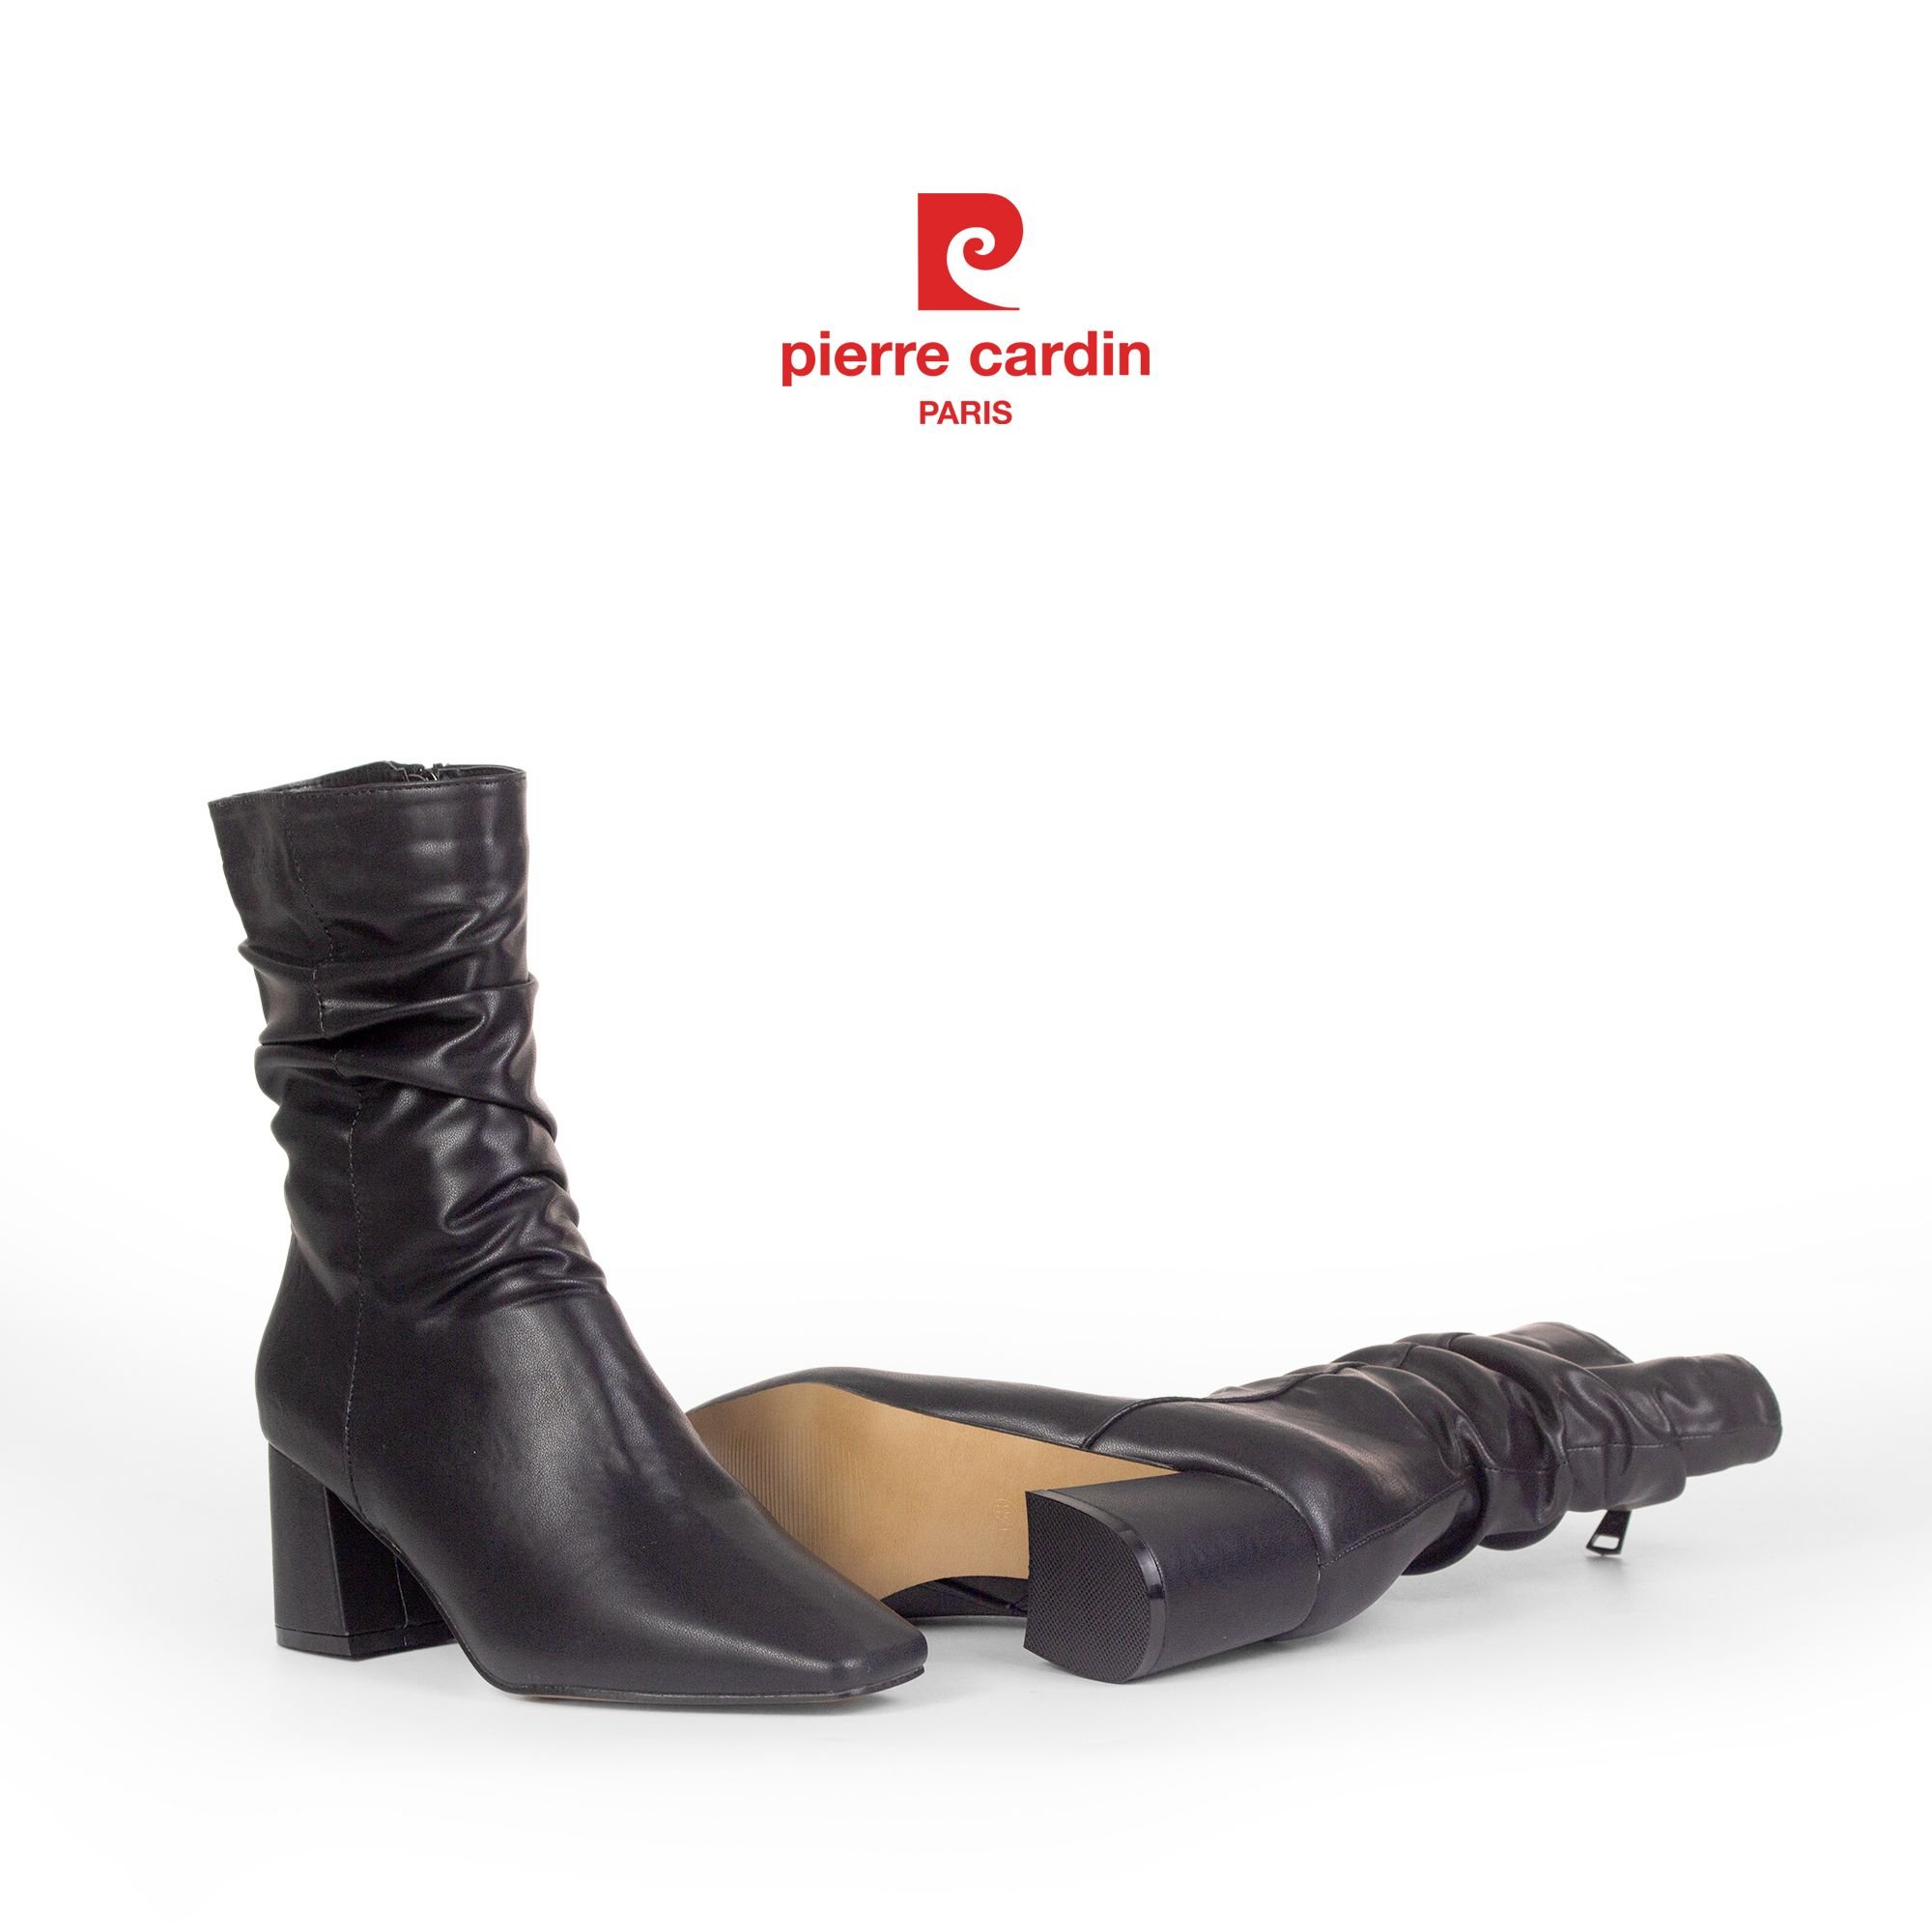 Pierre Cadin Paris Vietnam: Giày Boots Nữ Cổ Cao Pierre Cardin - PCWFWMH 246 (BLACK)